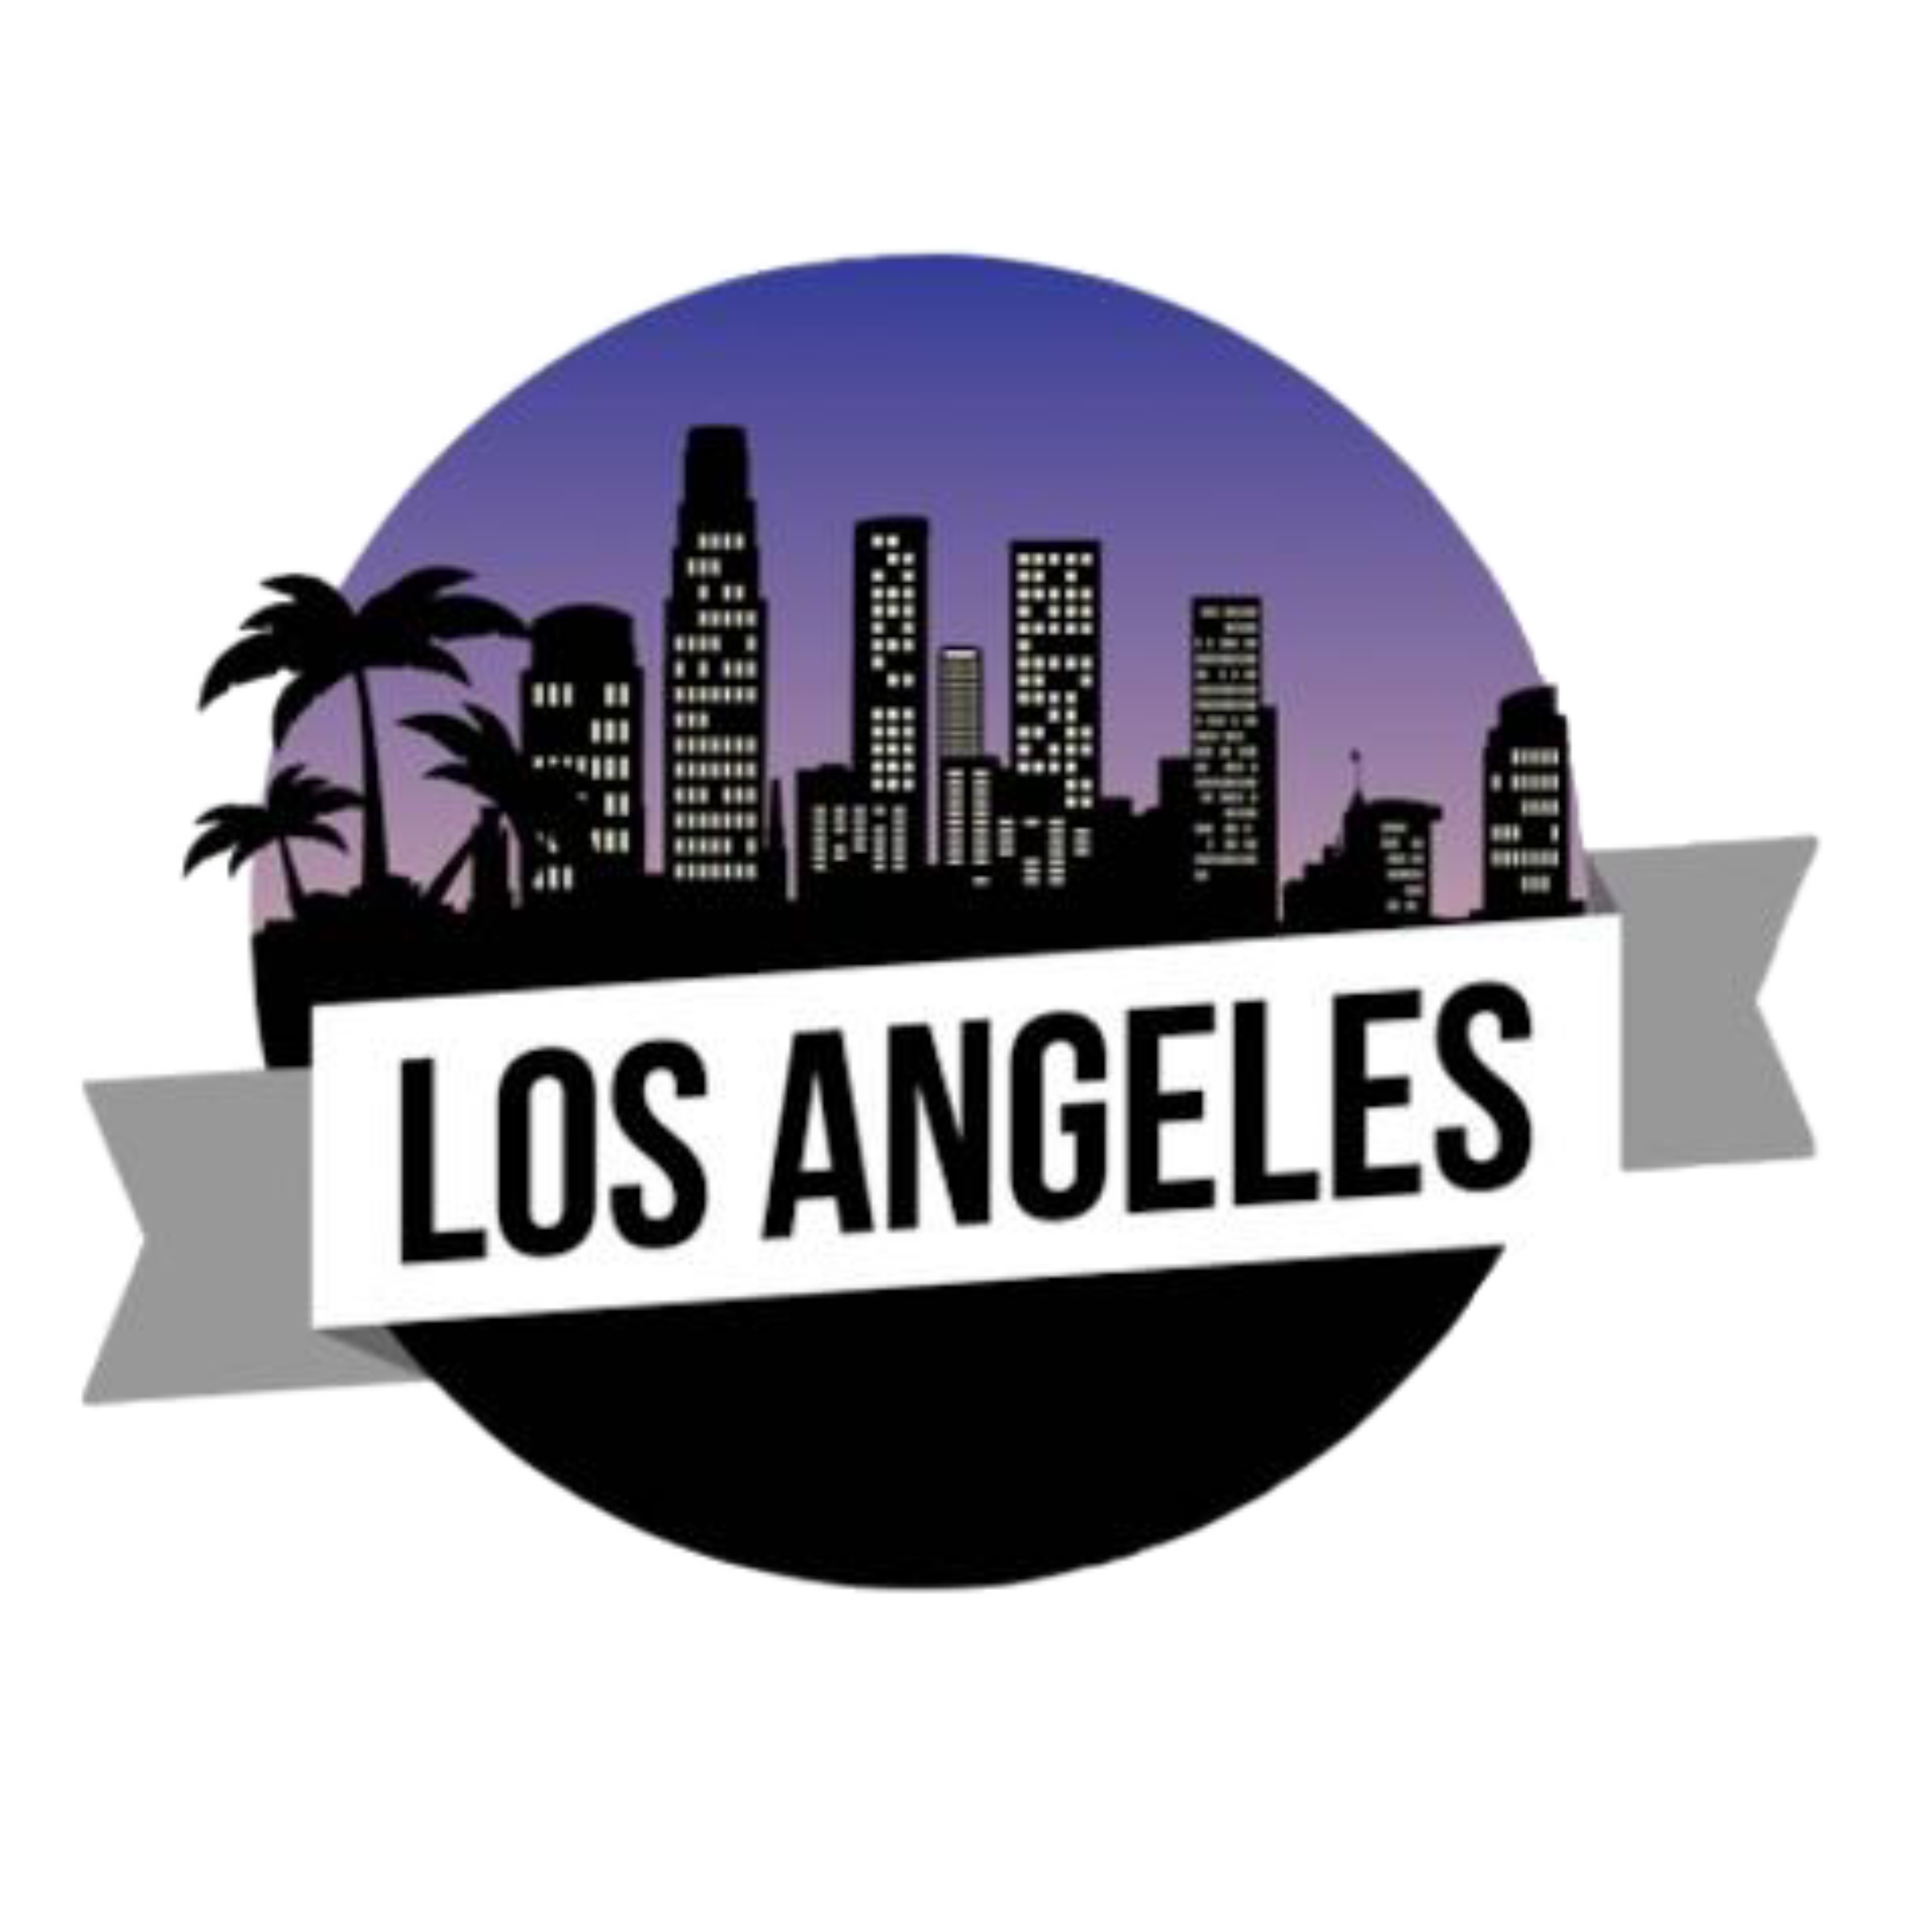 Лост анджелес текст френдли таг. Лос-Анджелес. Los Angeles надпись. La Лос Анджелес. Los Angeles логотип la.